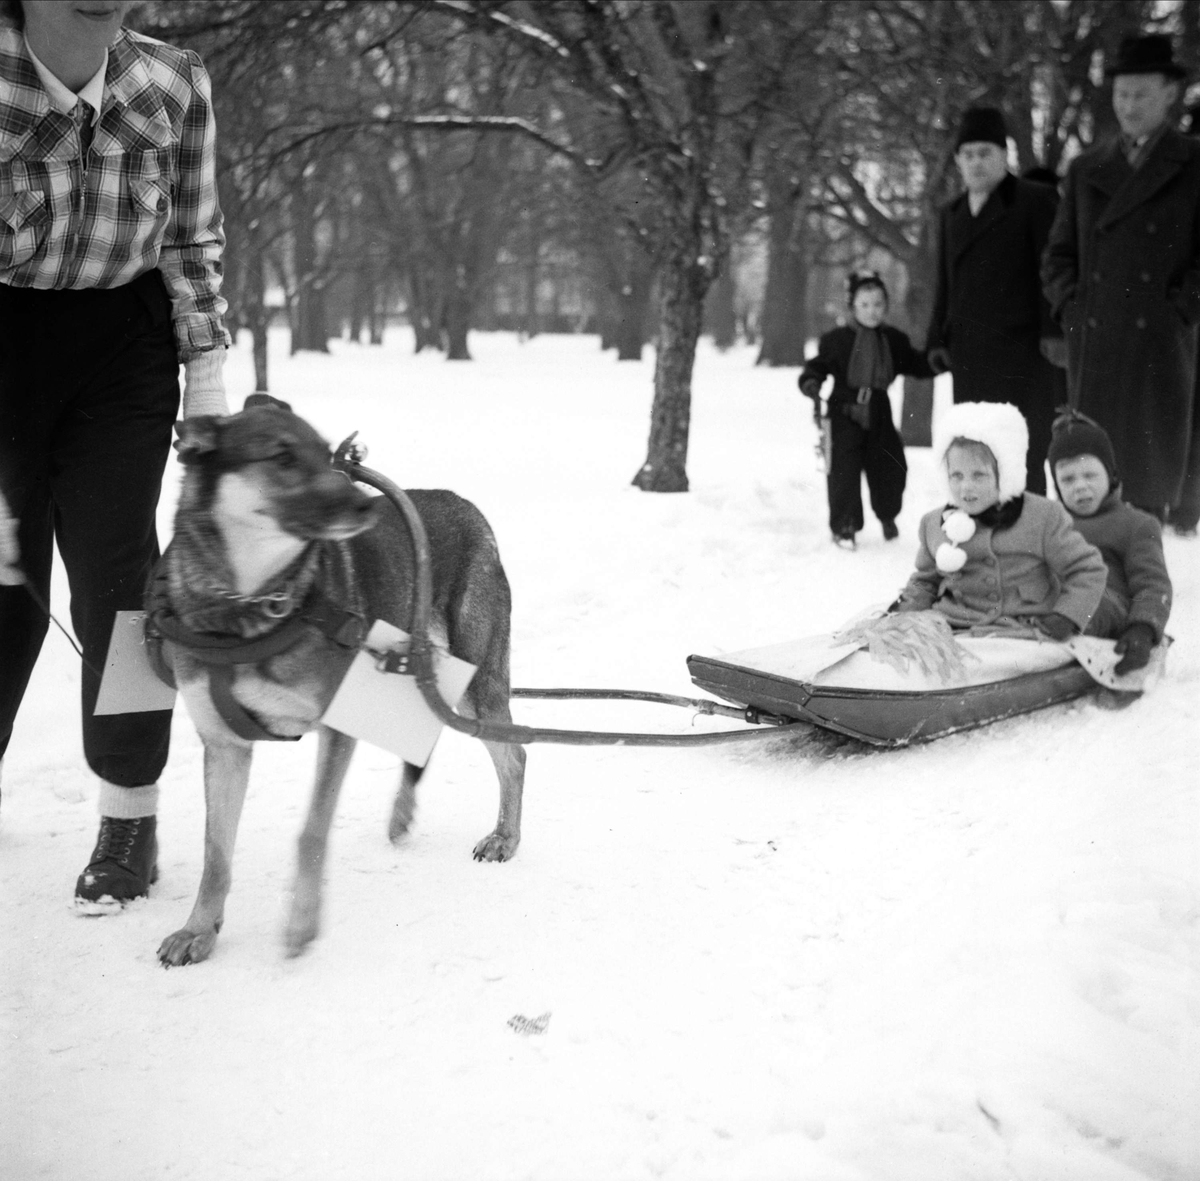 Svenska Brukshundklubbens Uppsalaavdelning har uppvisning, Uppsala mars 1946